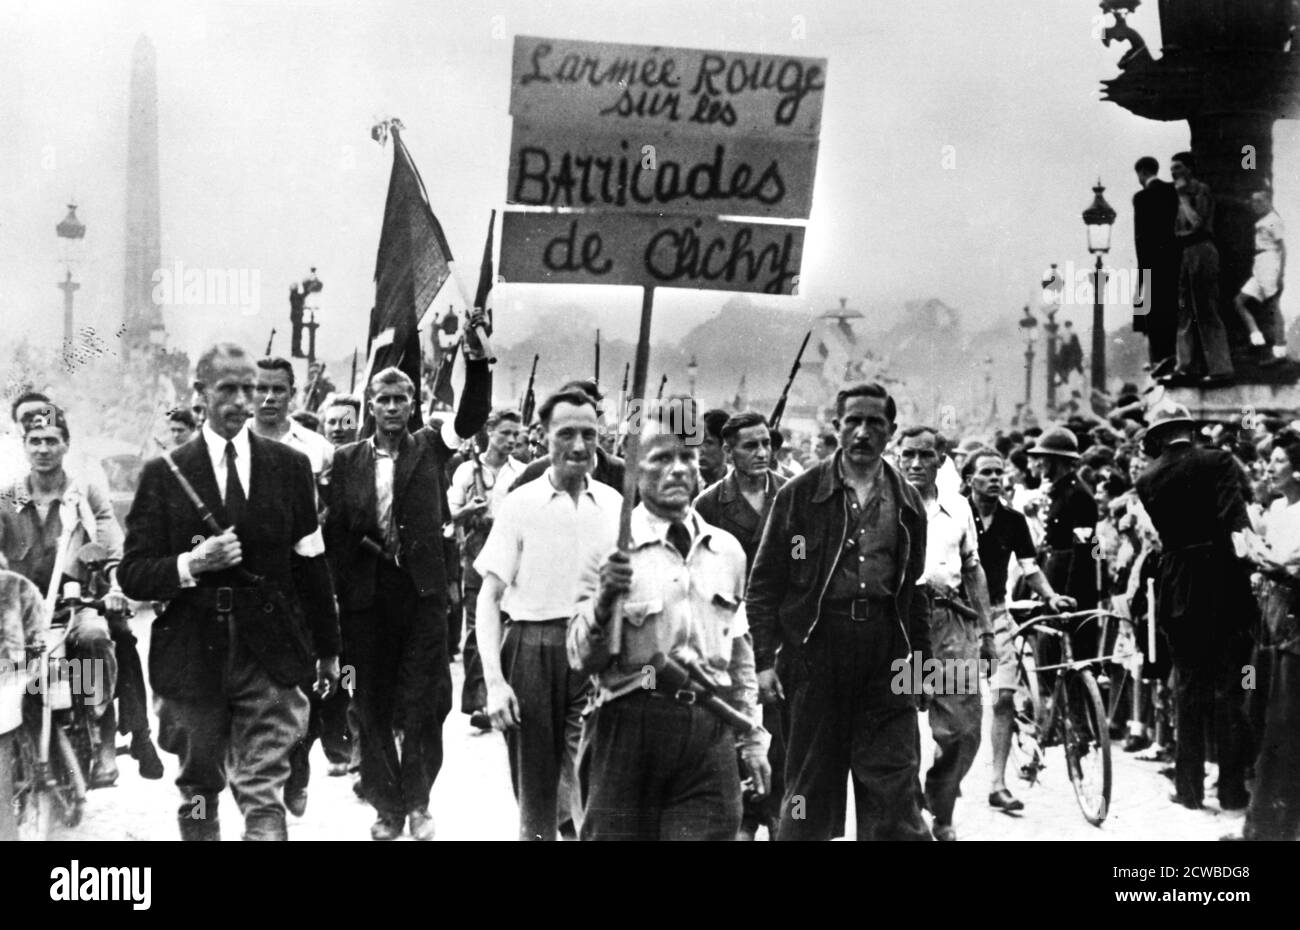 Des membres de la résistance française défilant à travers la place de la Concorde, libération de Paris, août 1944. Le écriteau indique : l'Armée rouge sur les barricades de Clichy. Alors que les forces alliées approchent Paris, les citoyens de la ville se sont mobilisés pour aider à mettre fin à l'occupation nazie. Une grève générale a été déclenchée le 18 août, des barricades ont été érigées et des escarmouches avec les troupes allemandes ont éclaté. Au moment où les Allemands se sont rendus après l'entrée des troupes françaises libres dans la ville le 25 août, environ 1500 civils et membres de la résistance ont été tués dans les combats. Le photographe est inconnu. Banque D'Images